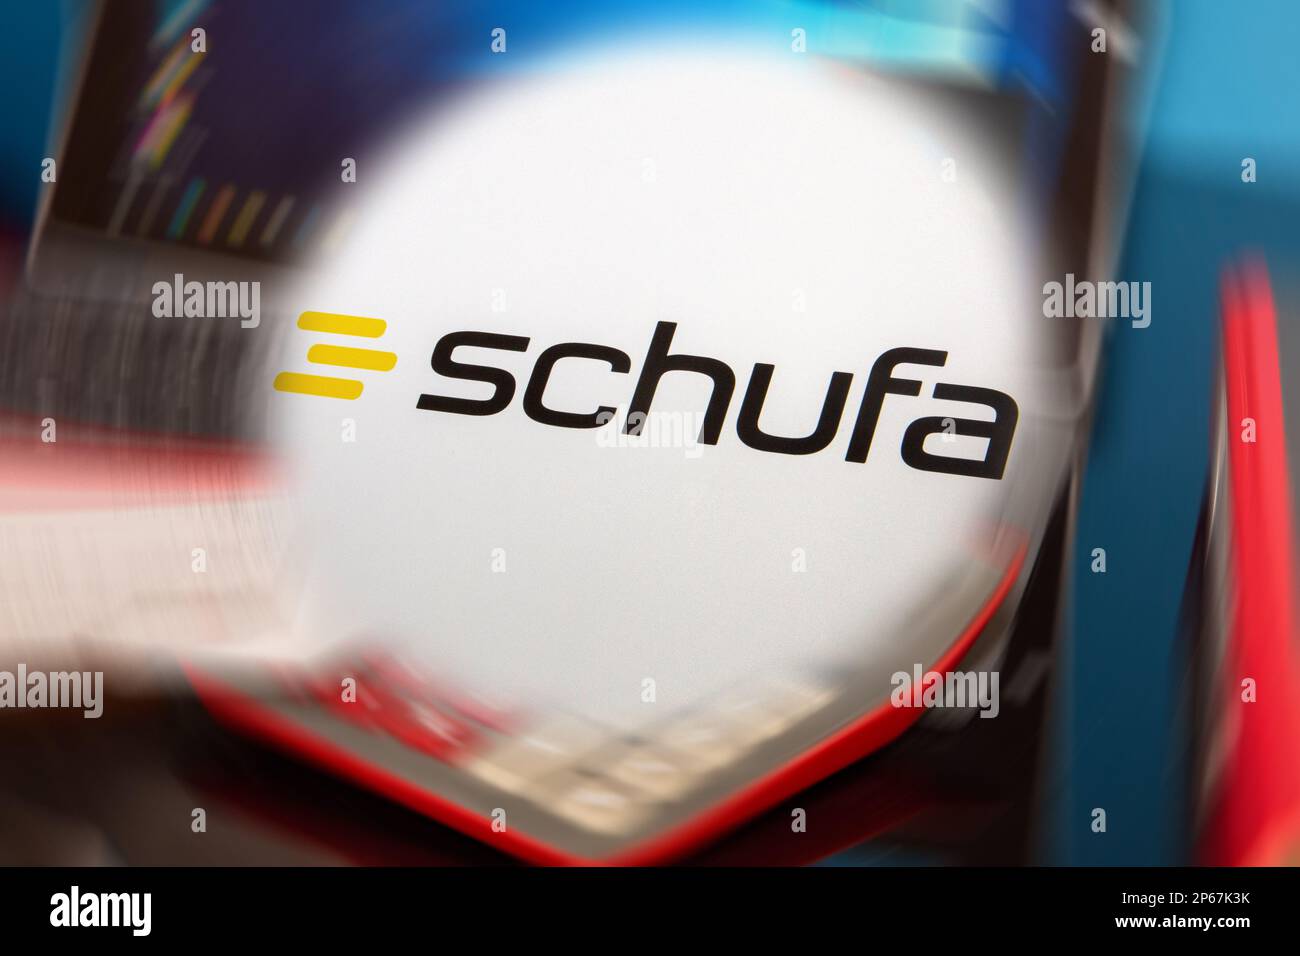 Immagine simbolo Schufa: Logo Schufa di fronte a una scrivania con tablet, calcolatrice e estratti conto (Schufa Holding AG, è un'agenzia di credito tedesca ITS b Foto Stock